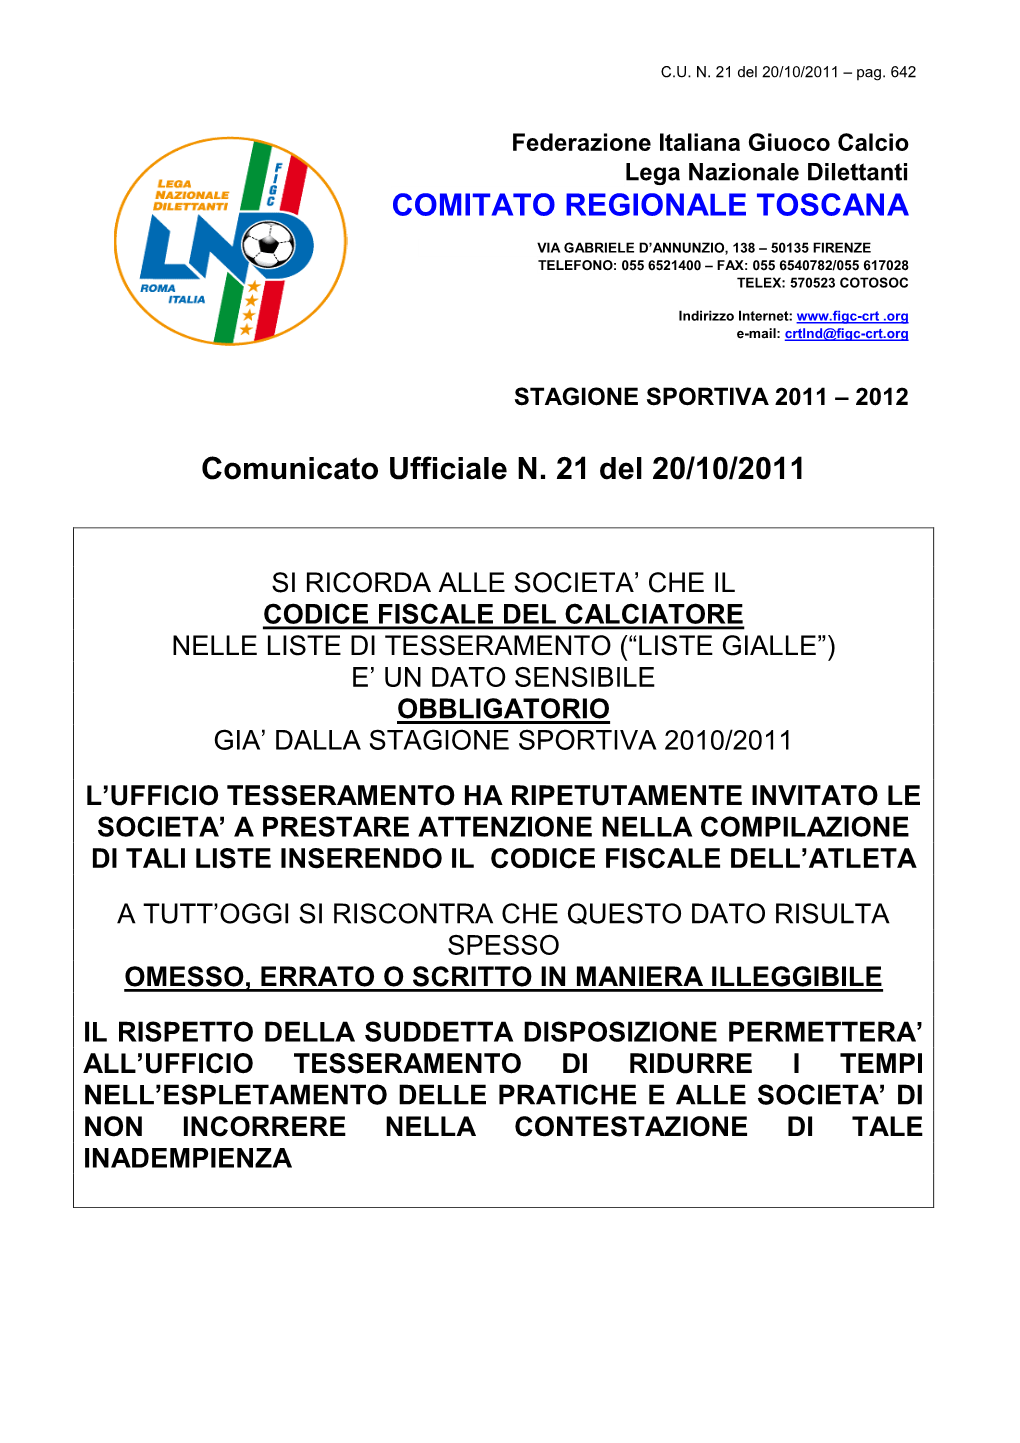 Comunicato Ufficiale N. 21 Del 20/10/2011 COMITATO